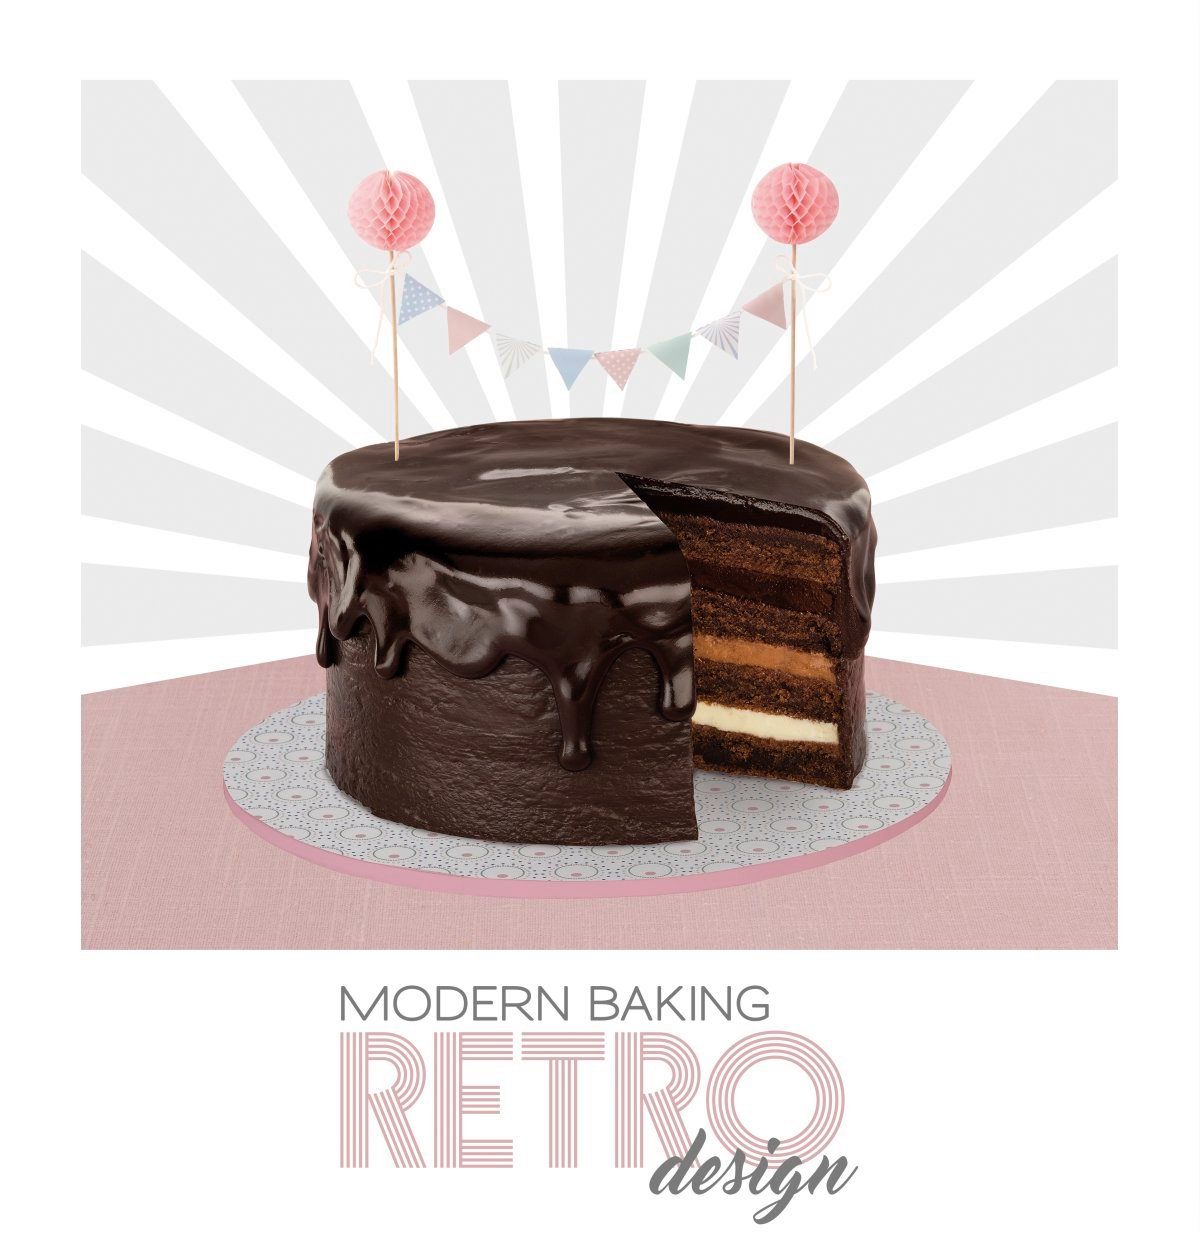 Oetker Dr. Wimpelkette Design Retro Baking Modern